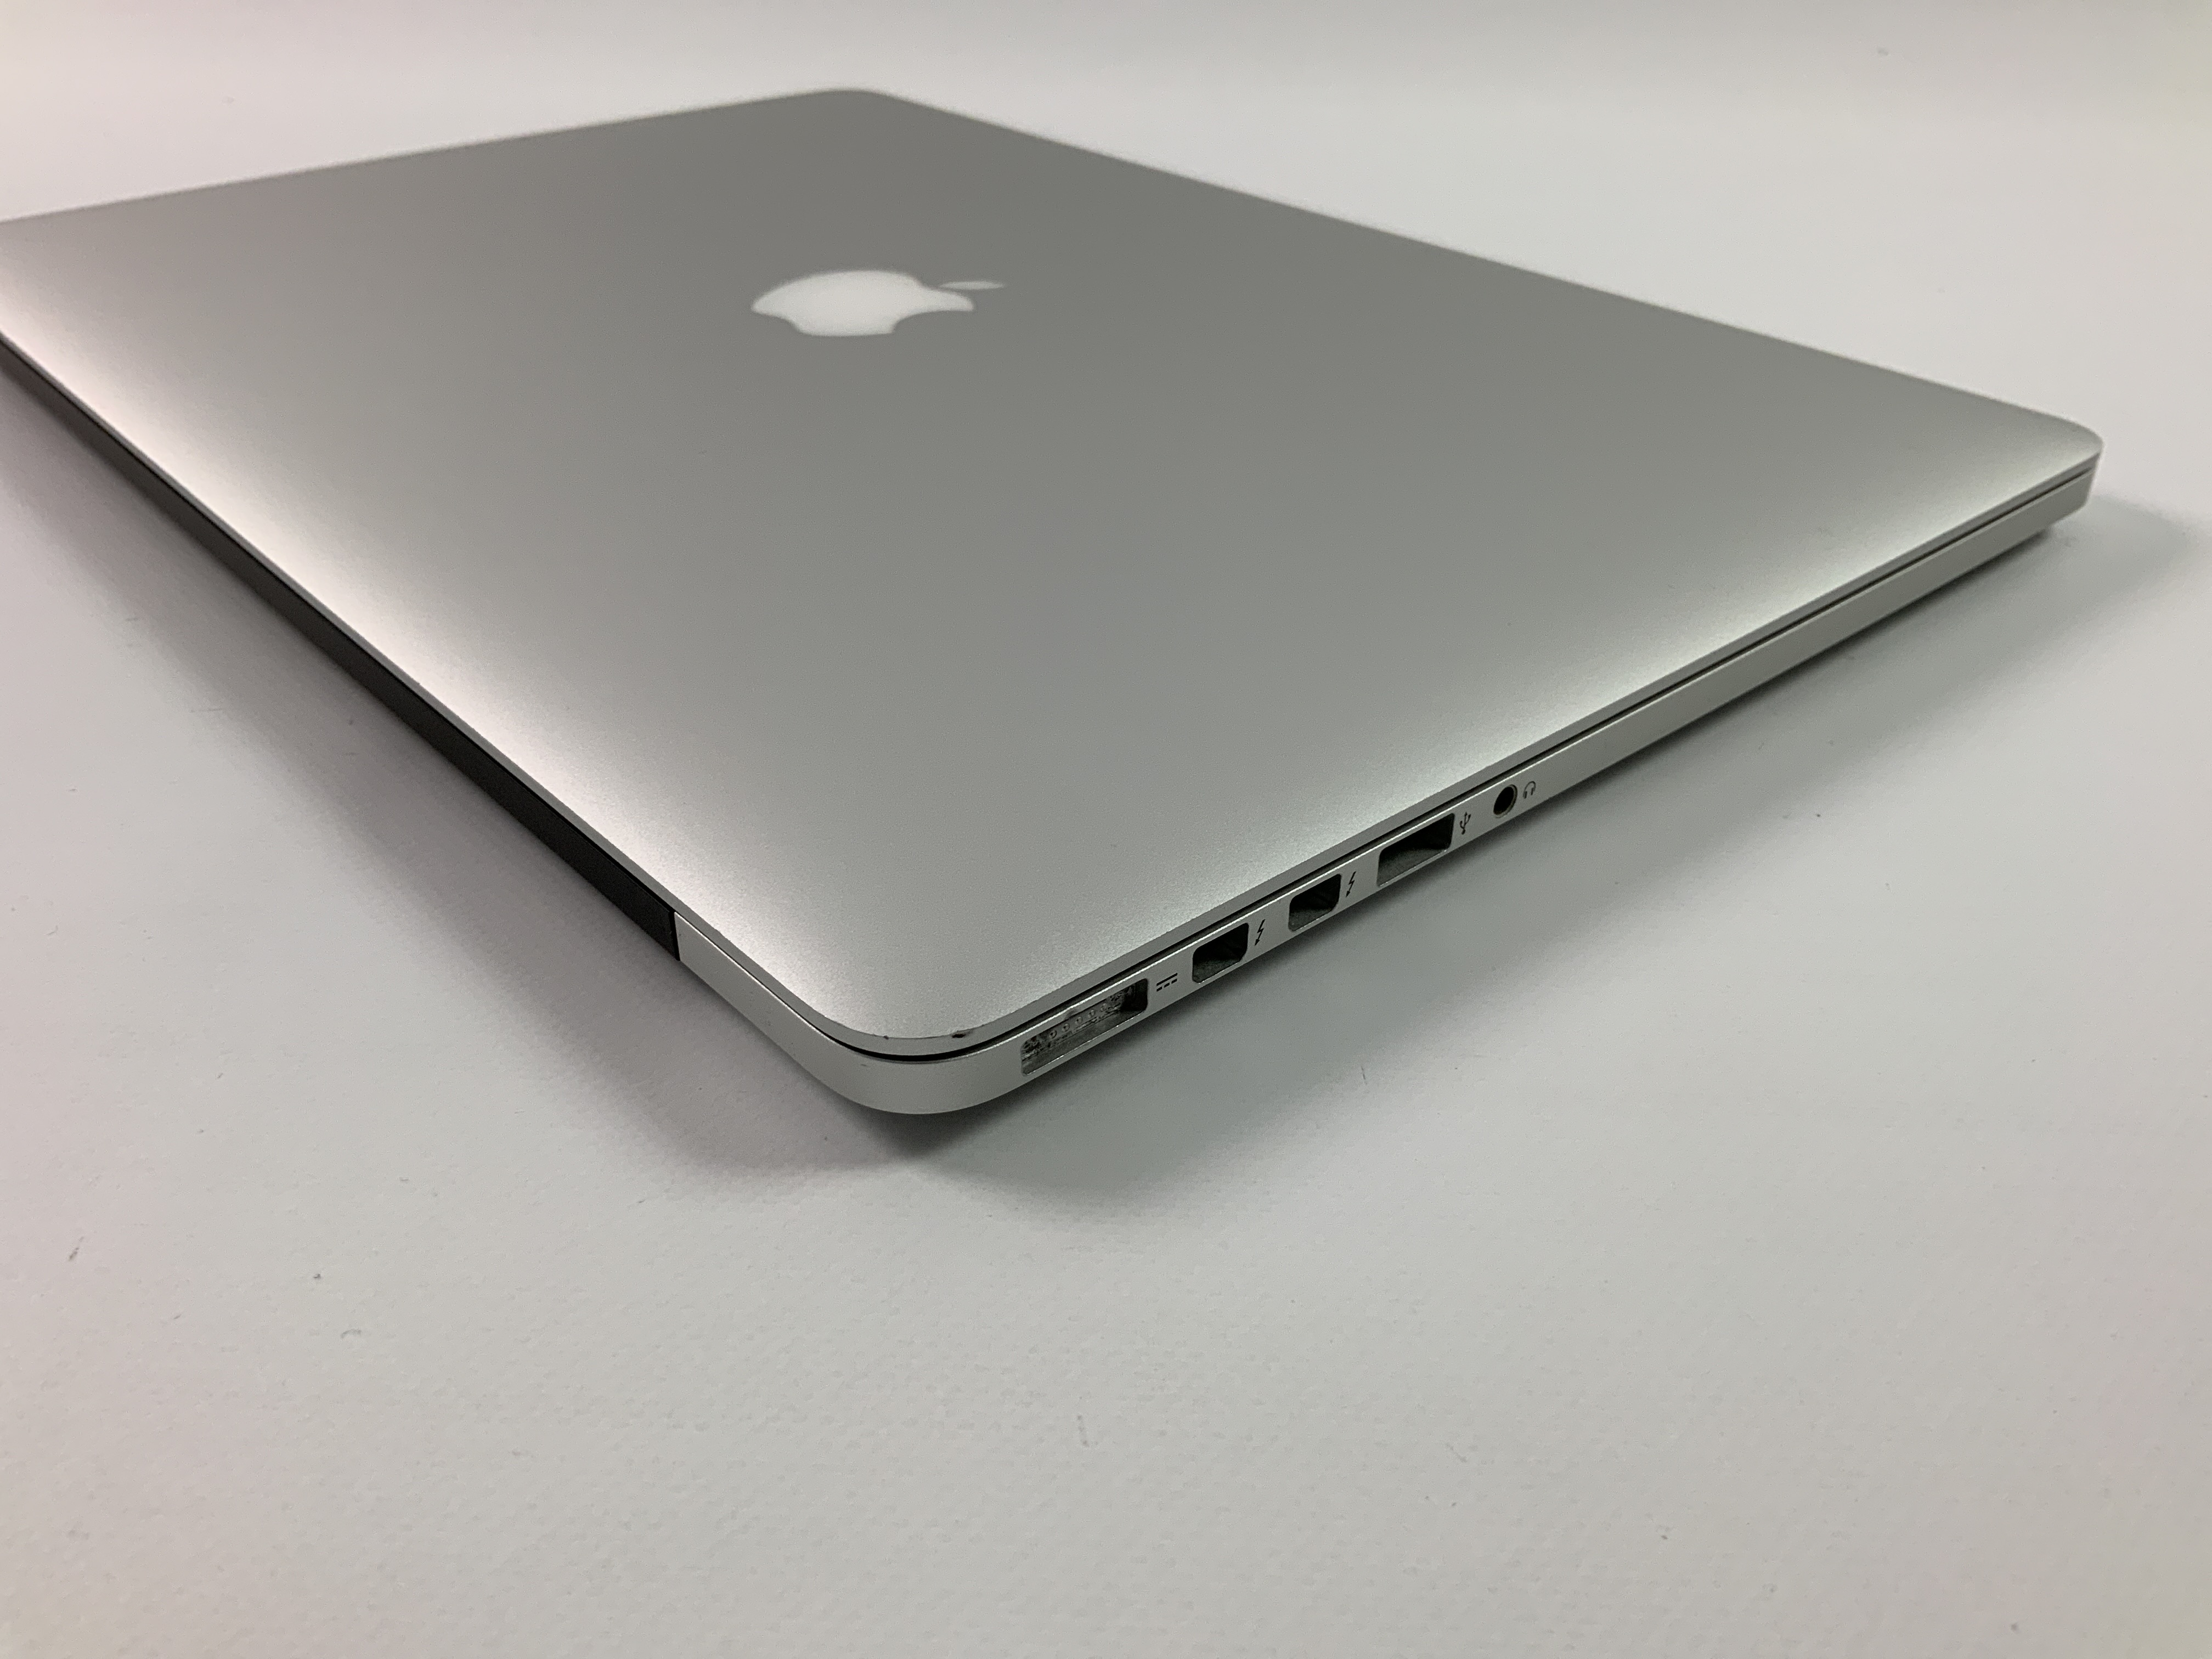 MacBook Pro Retina 15" Mid 2015 (Intel Quad-Core i7 2.2 GHz 16 GB RAM 256 GB SSD), Intel Quad-Core i7 2.2 GHz, 16 GB RAM, 256 GB SSD, obraz 3